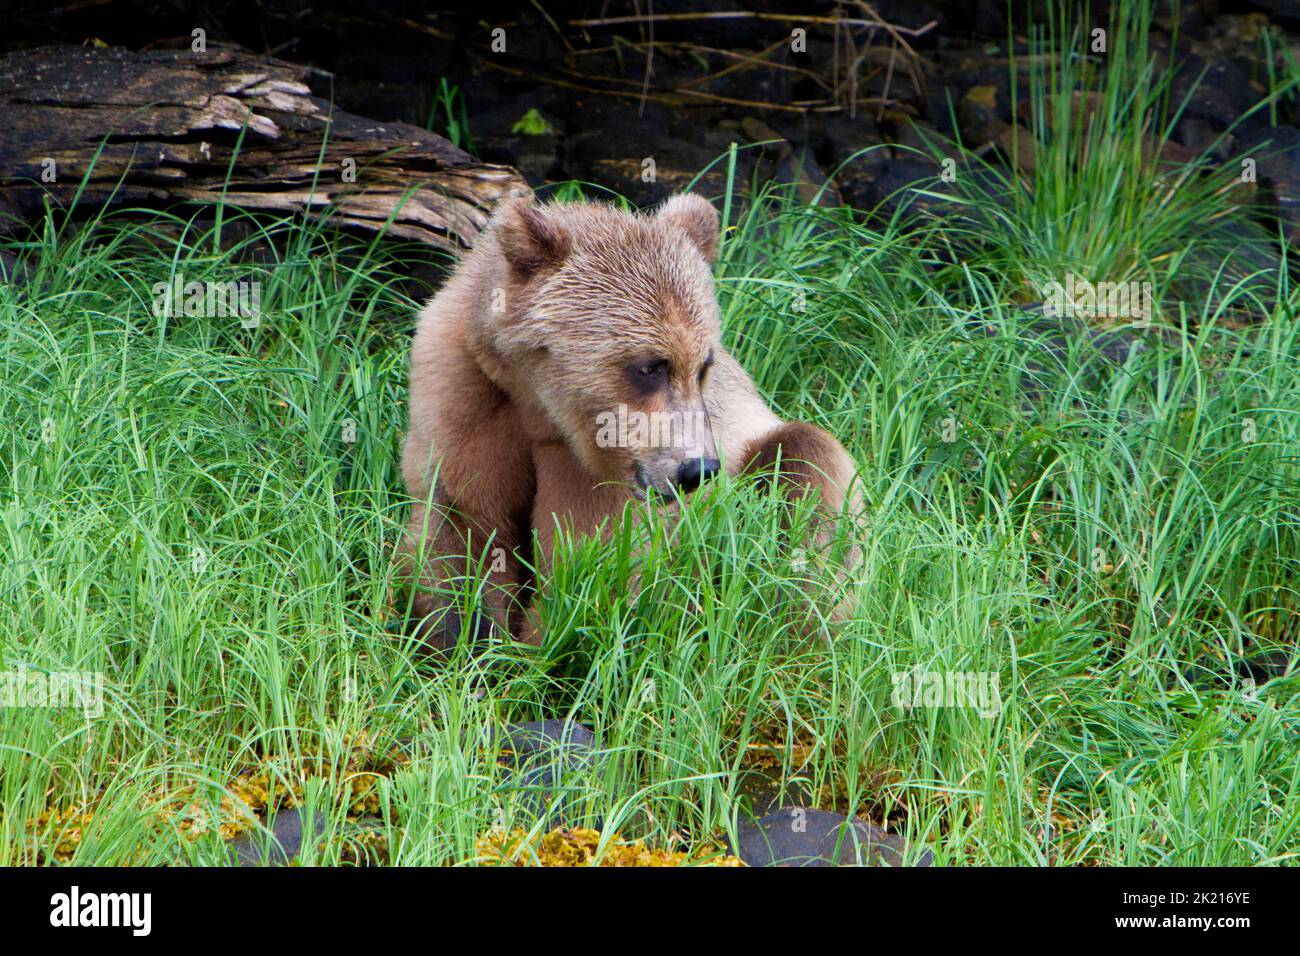 Un giovane Orso Grizzly (Ursus arctos horribilis) che si nutre di erba lungo le rive dell'insenatura Khutzeymateen a nord del Principe Rupert, BC, Canada nel mese di luglio Foto Stock